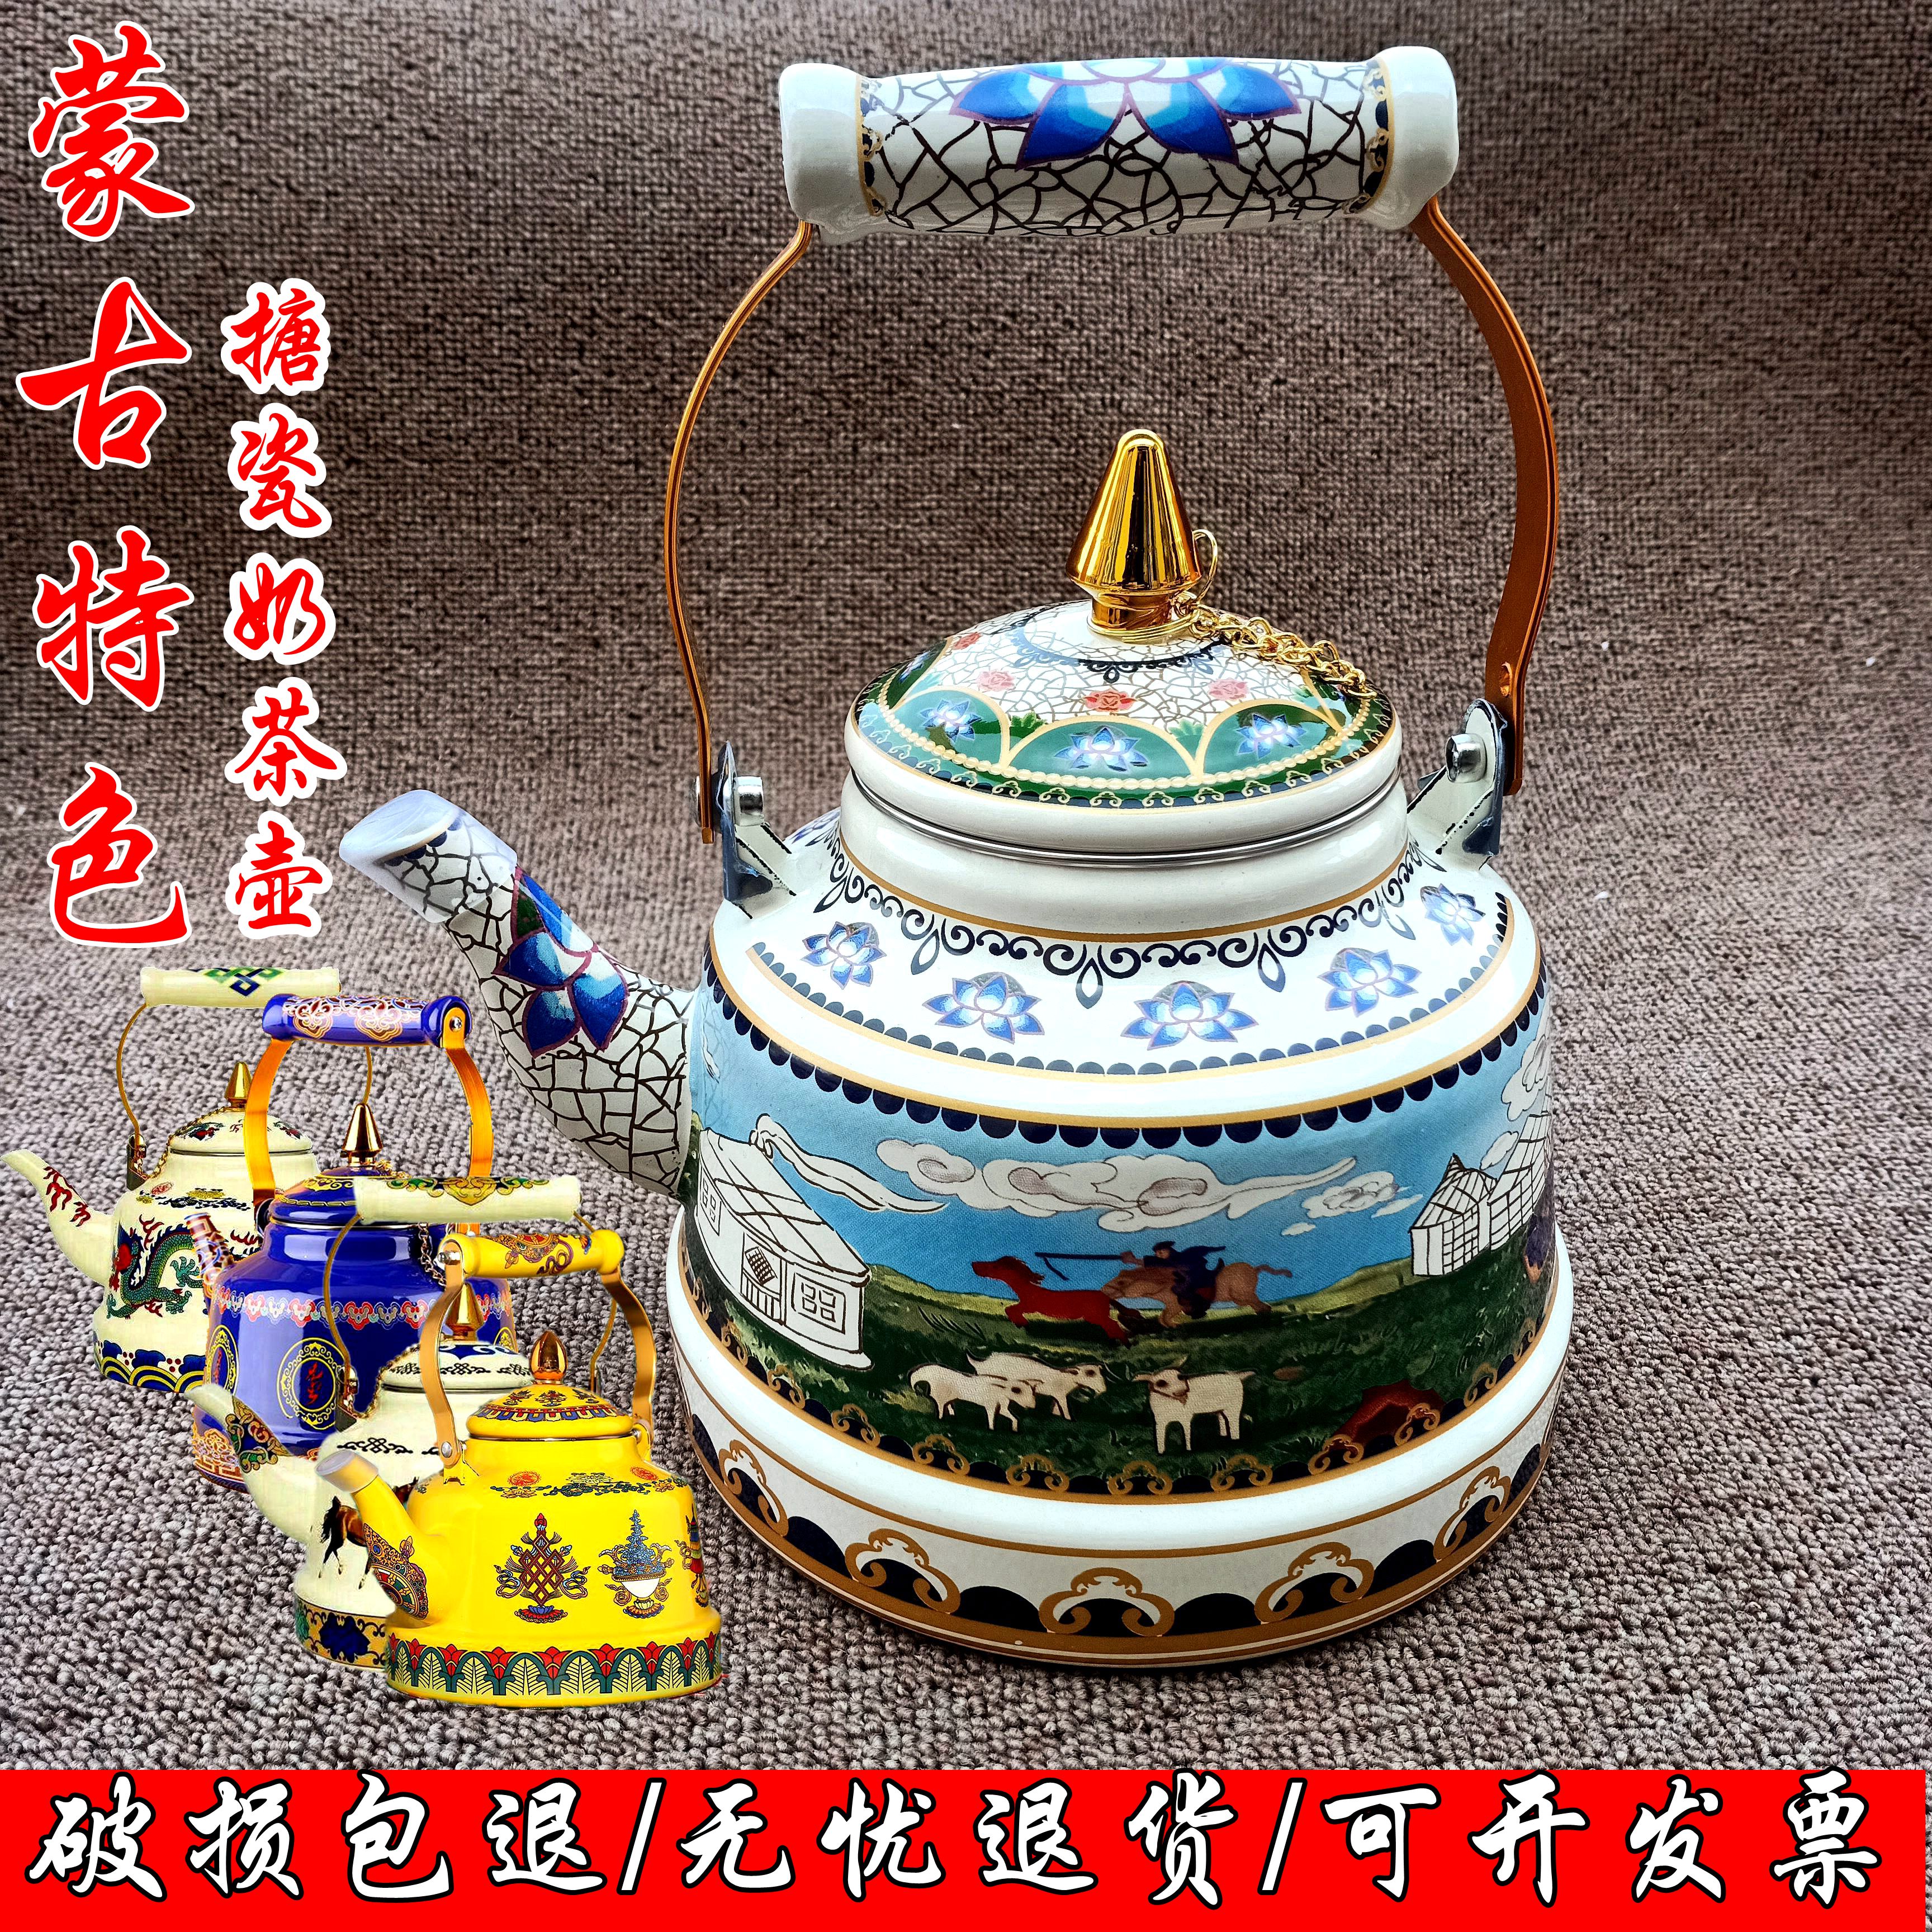 藏式八吉祥珐琅彩搪瓷茶壶蒙古西藏民族特色奶茶酥油冲茶壶茶餐具